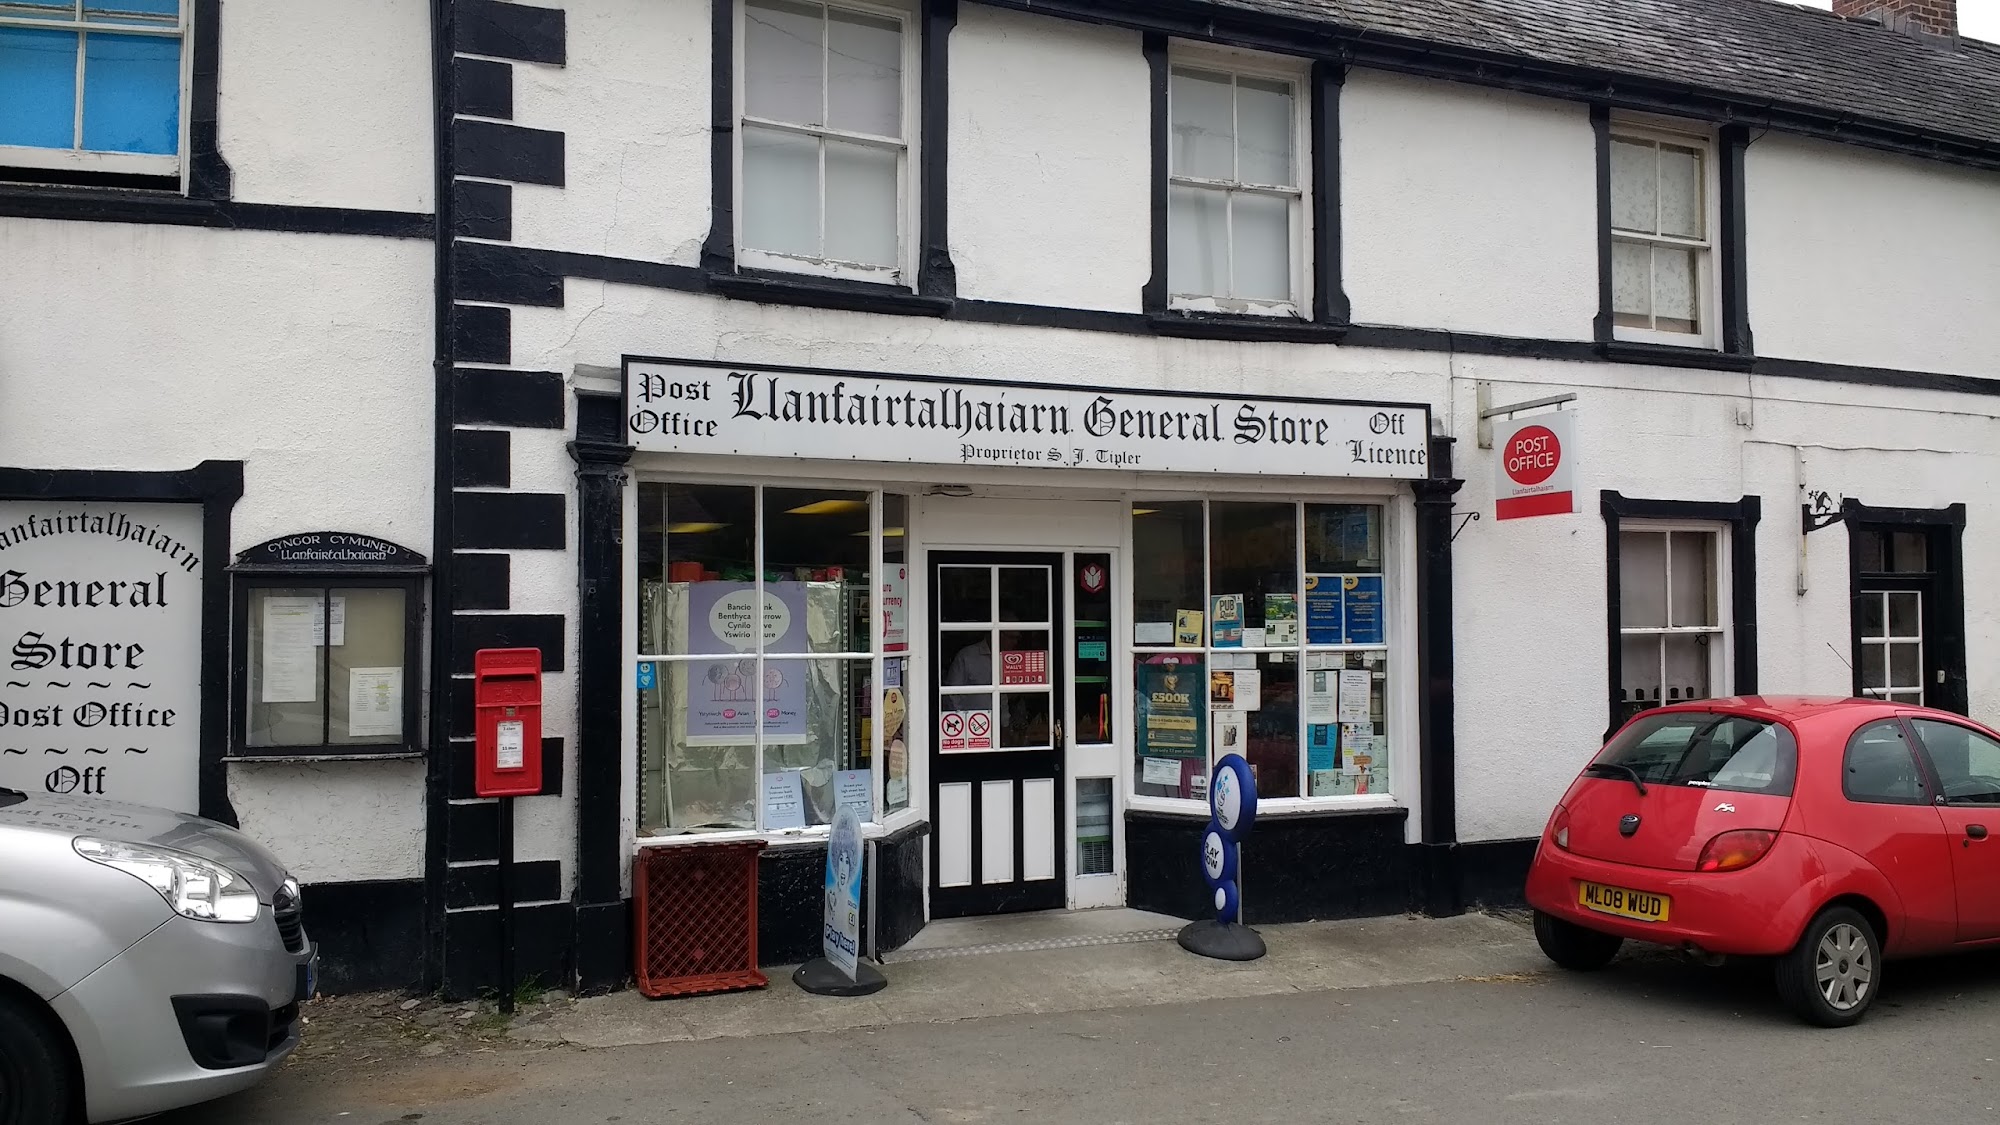 Siop y Llan /village shop / Post Office